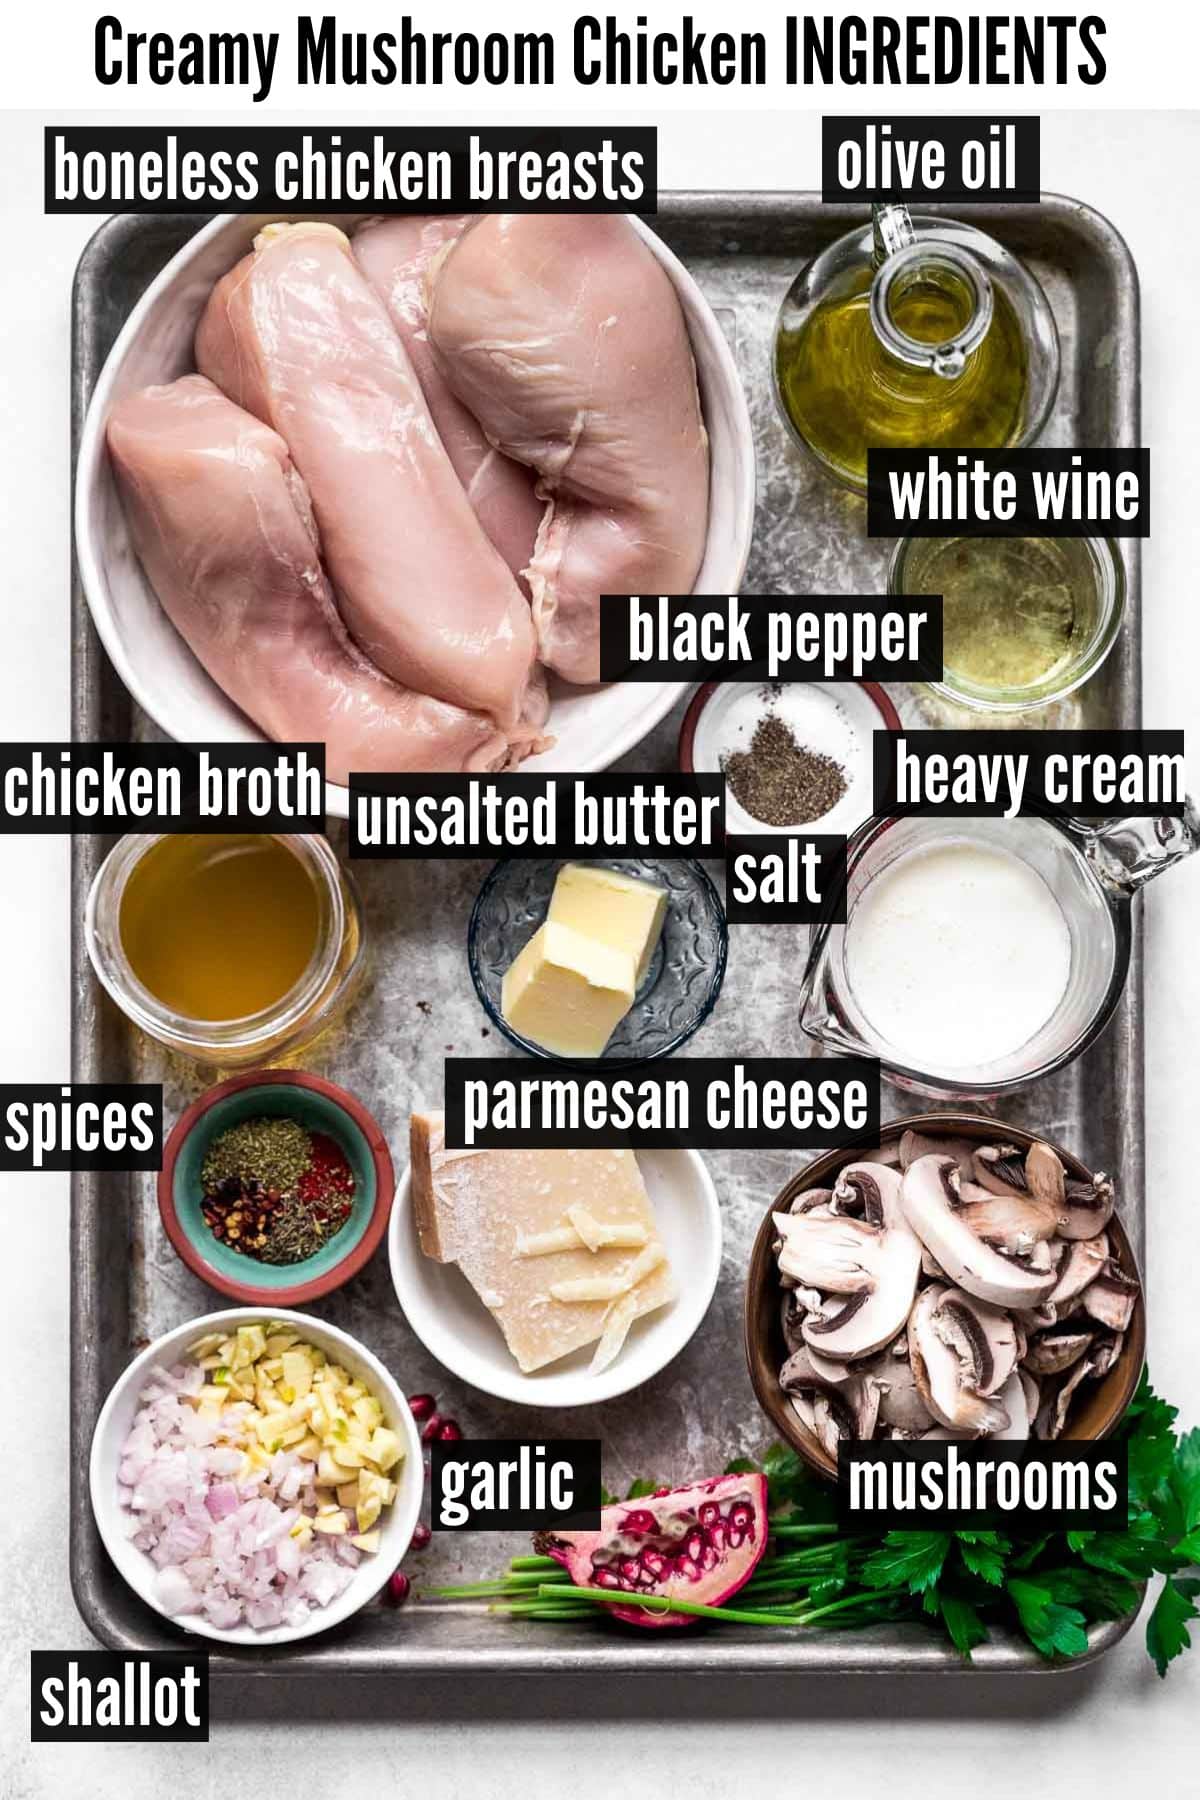 creamy mushroom chicken labelled ingredients.